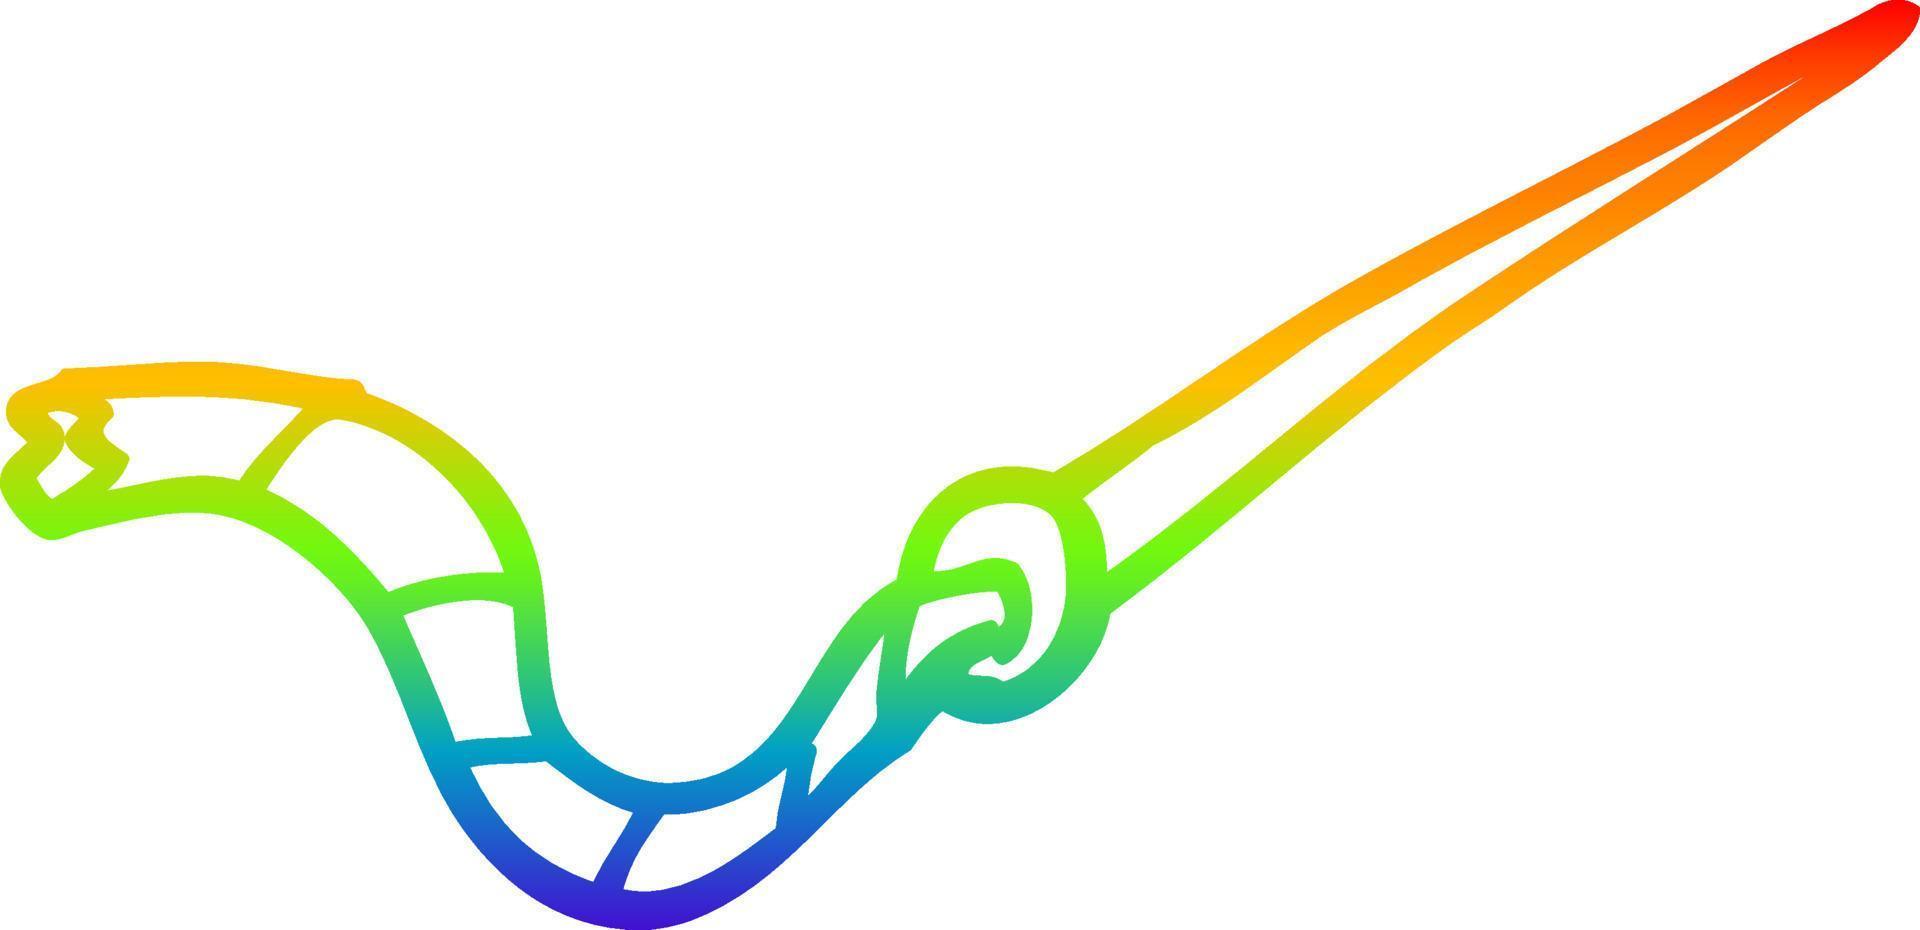 arcobaleno gradiente linea disegno cartone animato ago e filo vettore